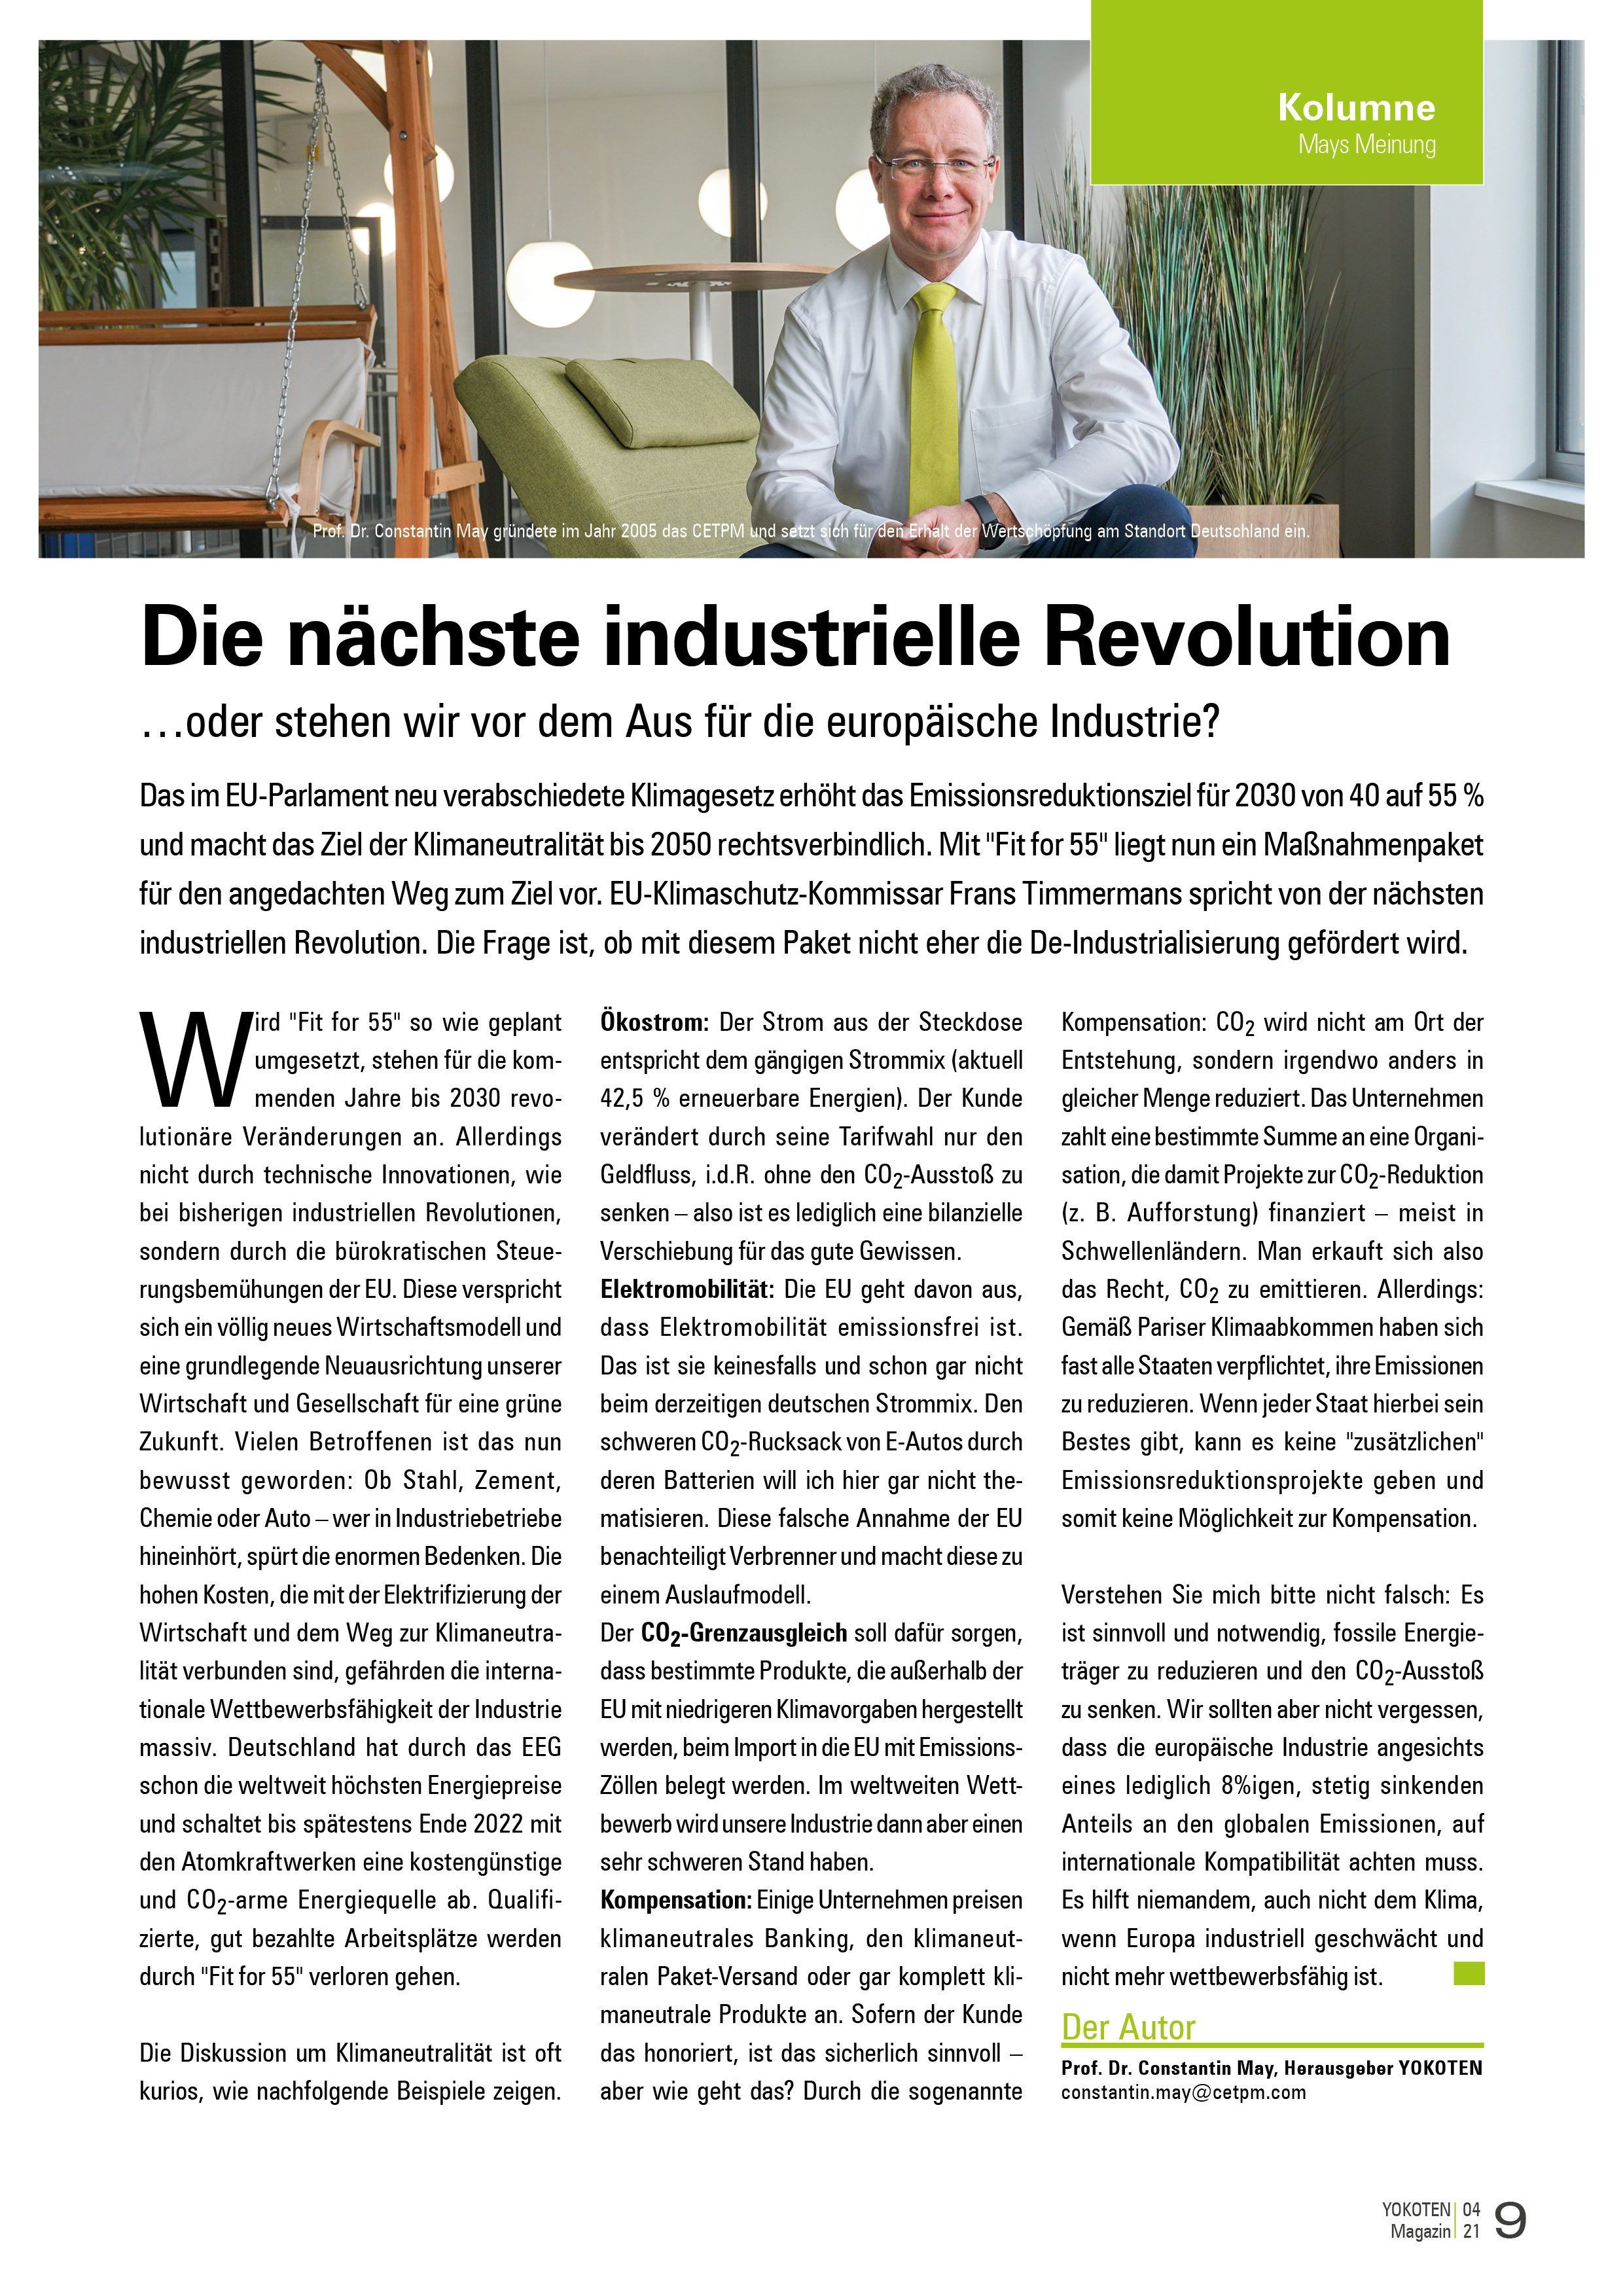 Die nächste industrielle Revolution - Artikel aus Fachmagazin YOKOTEN 2021-04